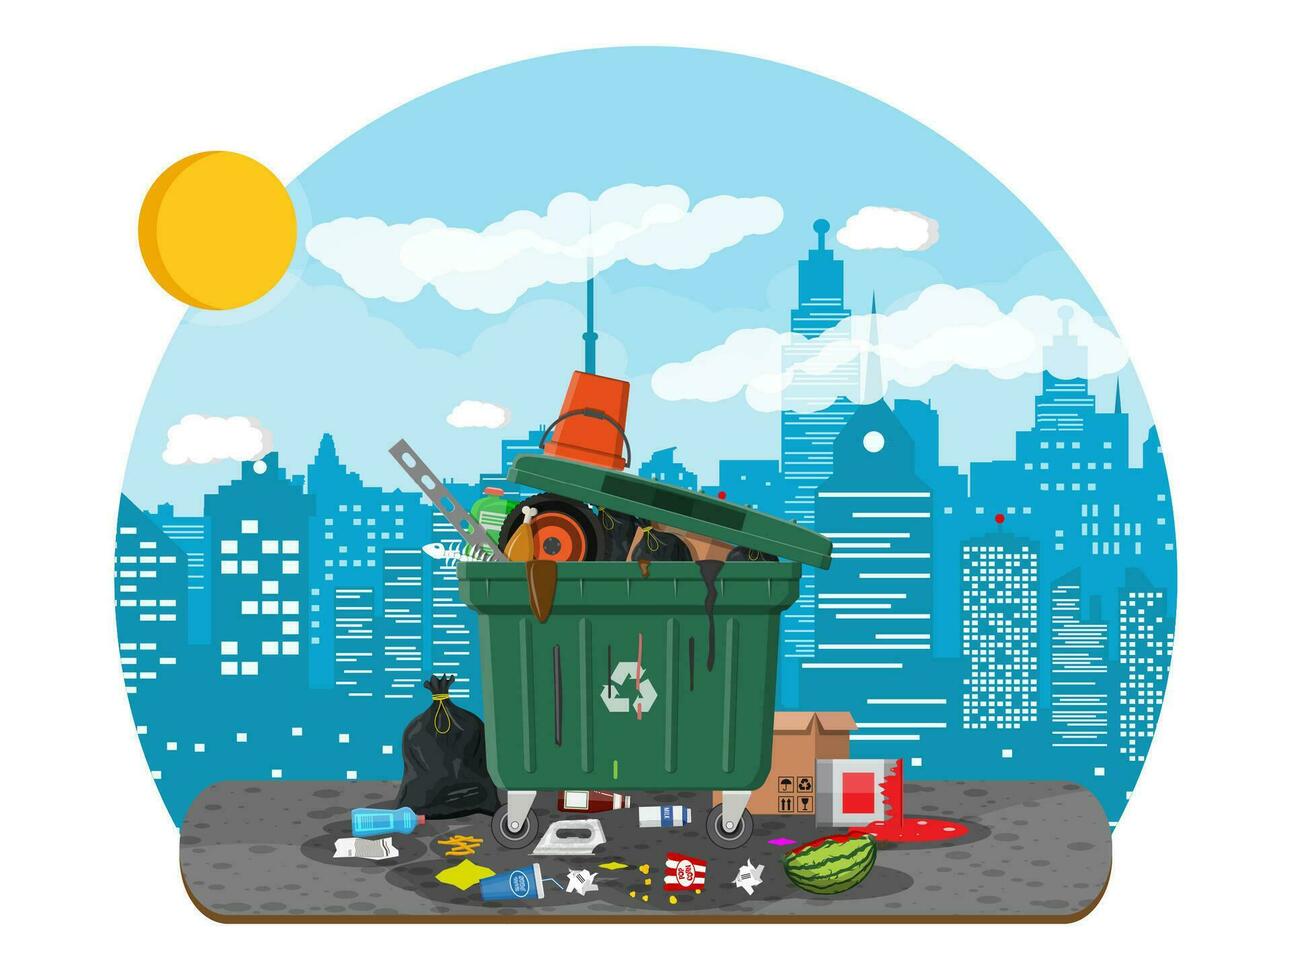 el plastico basura compartimiento lleno de basura. desbordante basura, alimento, podrido fruta, documentos, contenedores y vaso. basura reciclaje y utilización equipo. residuos administración vector ilustración plano estilo